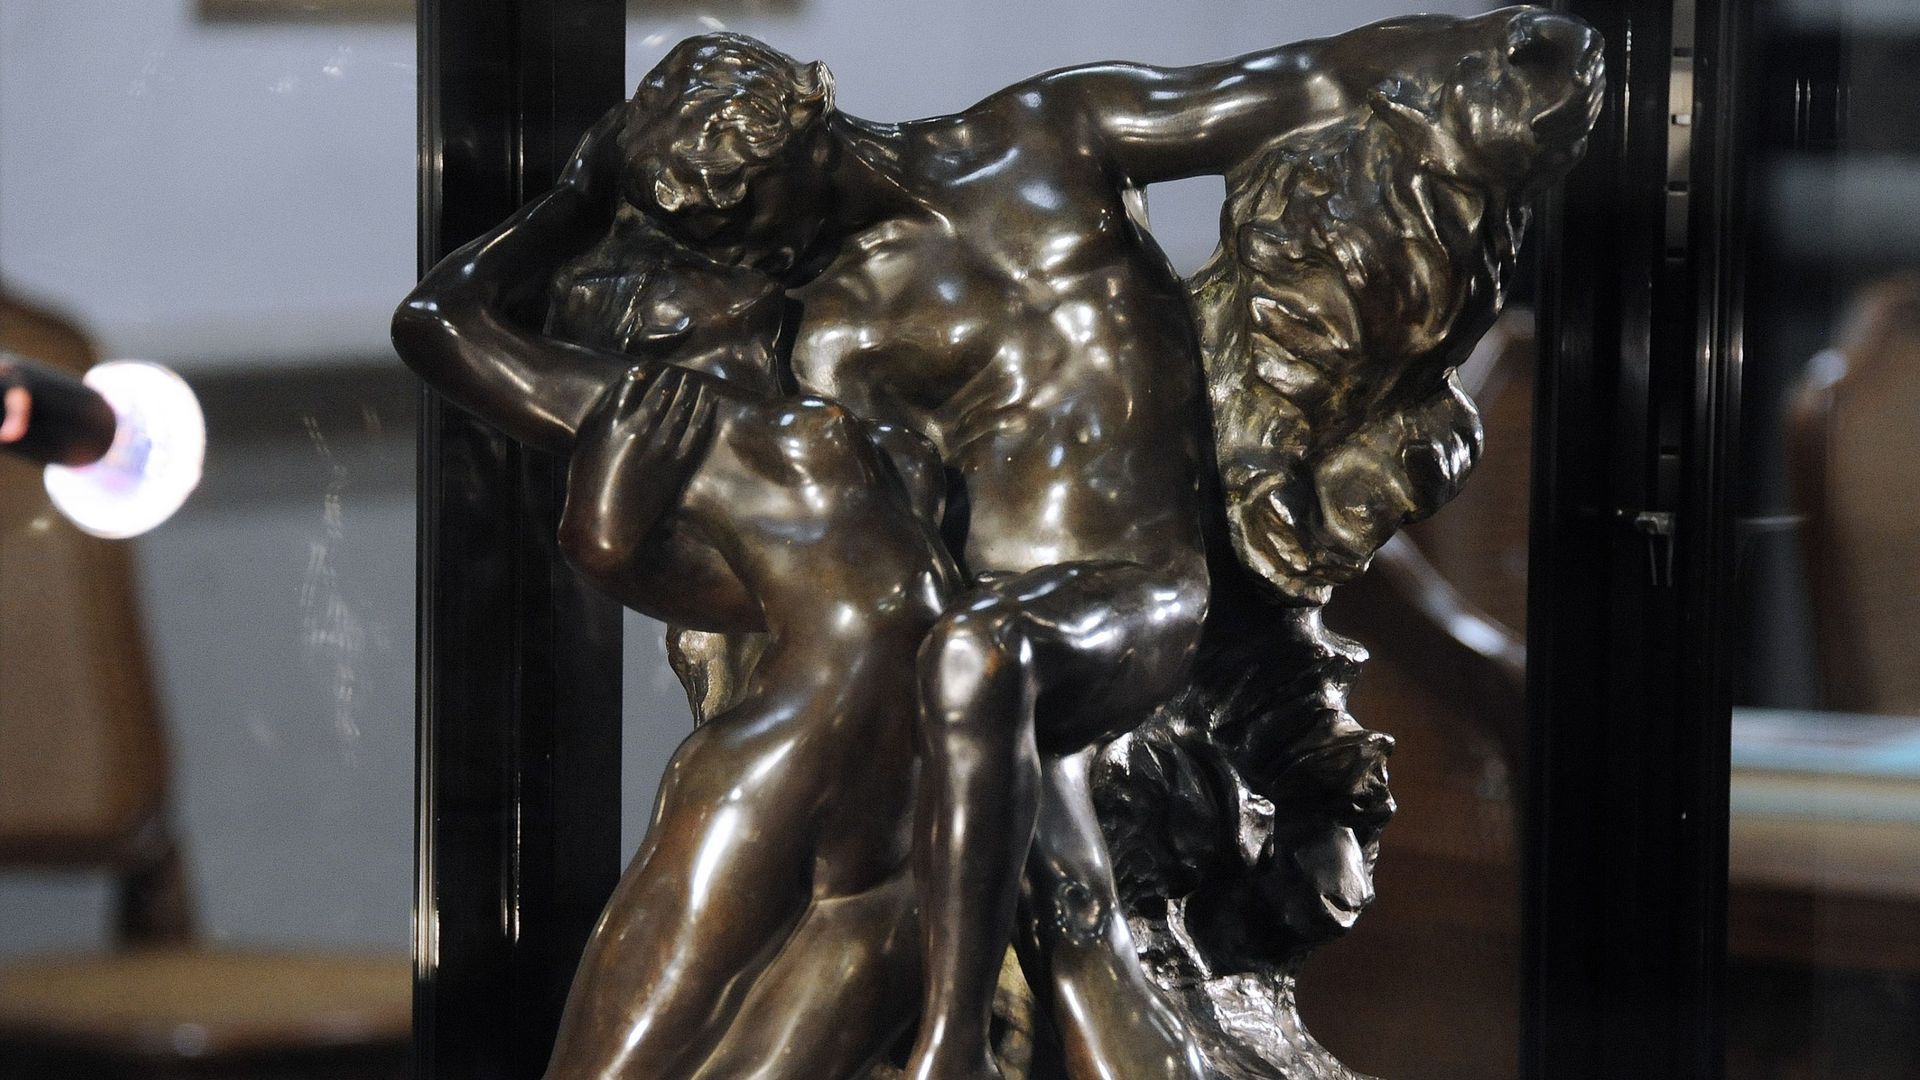 L'oeuvre mesure 80 centimètres de longueur, 66 de hauteur, pour 154 kg et est une variante de la sculpture en marbre "Le Baiser", exposée au Musée Rodin à Paris